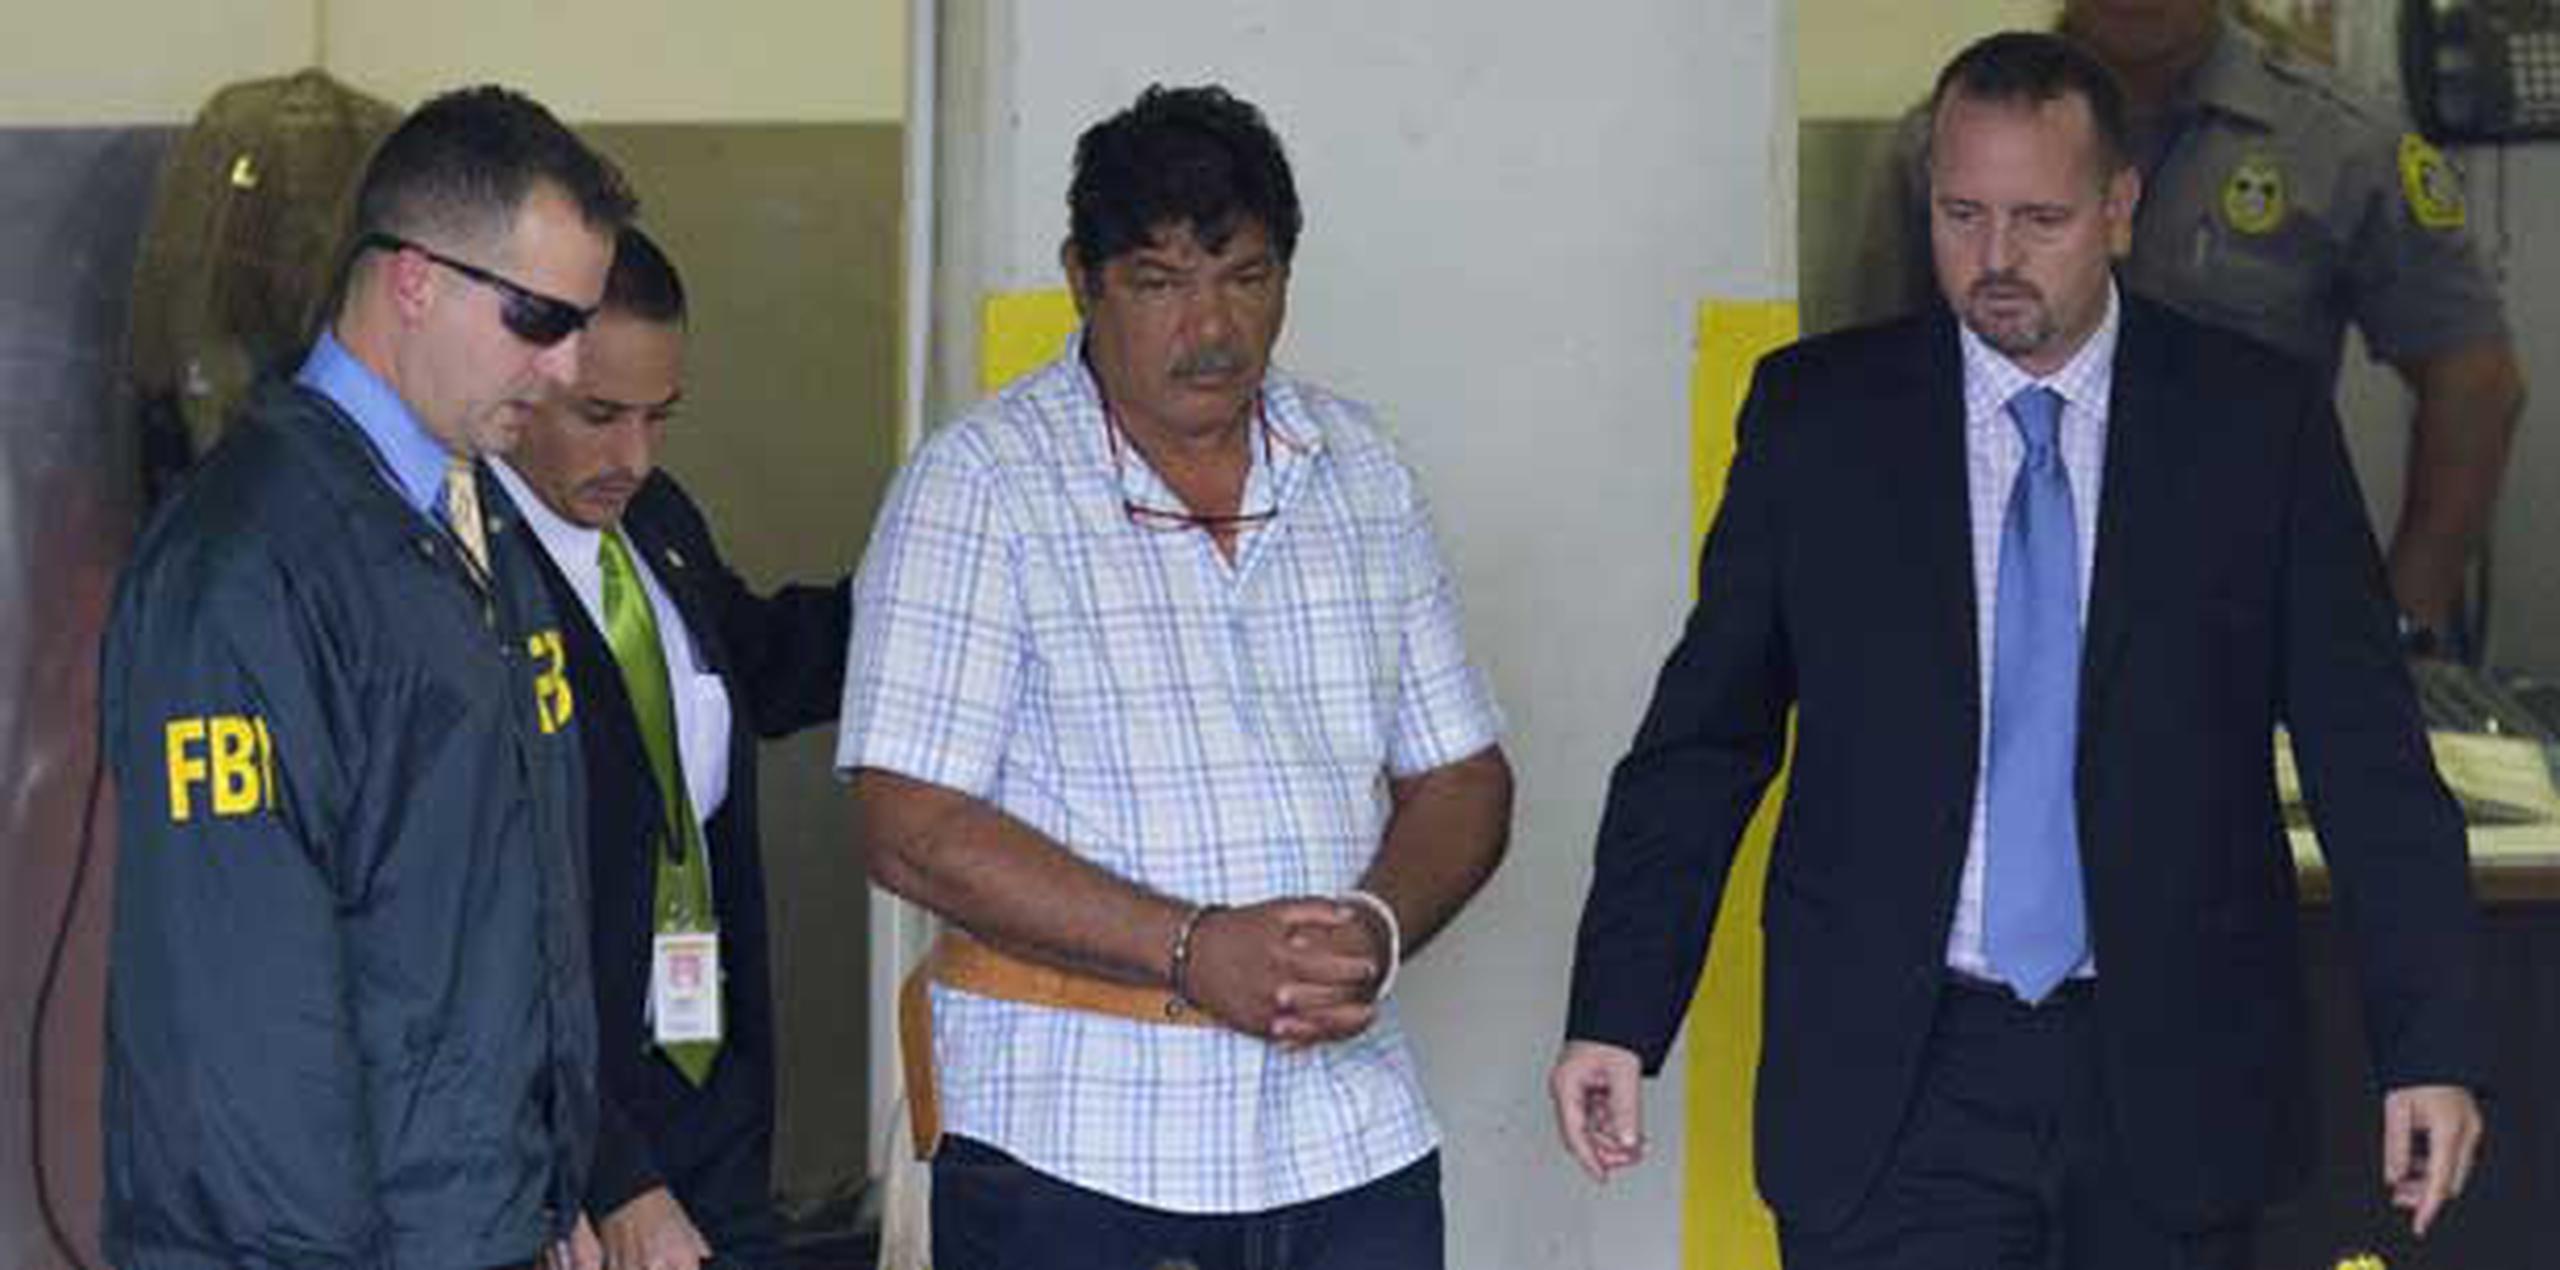 Rivera Correa fue arrestado el pasado 10 de julio por soborno, tentativa de extorsión y obstrucción a la justicia. Desde entonces permanece detenido en el Centro de Detención Metropolitano, en Guaynabo, sin derecho a fianza. (Archivo)